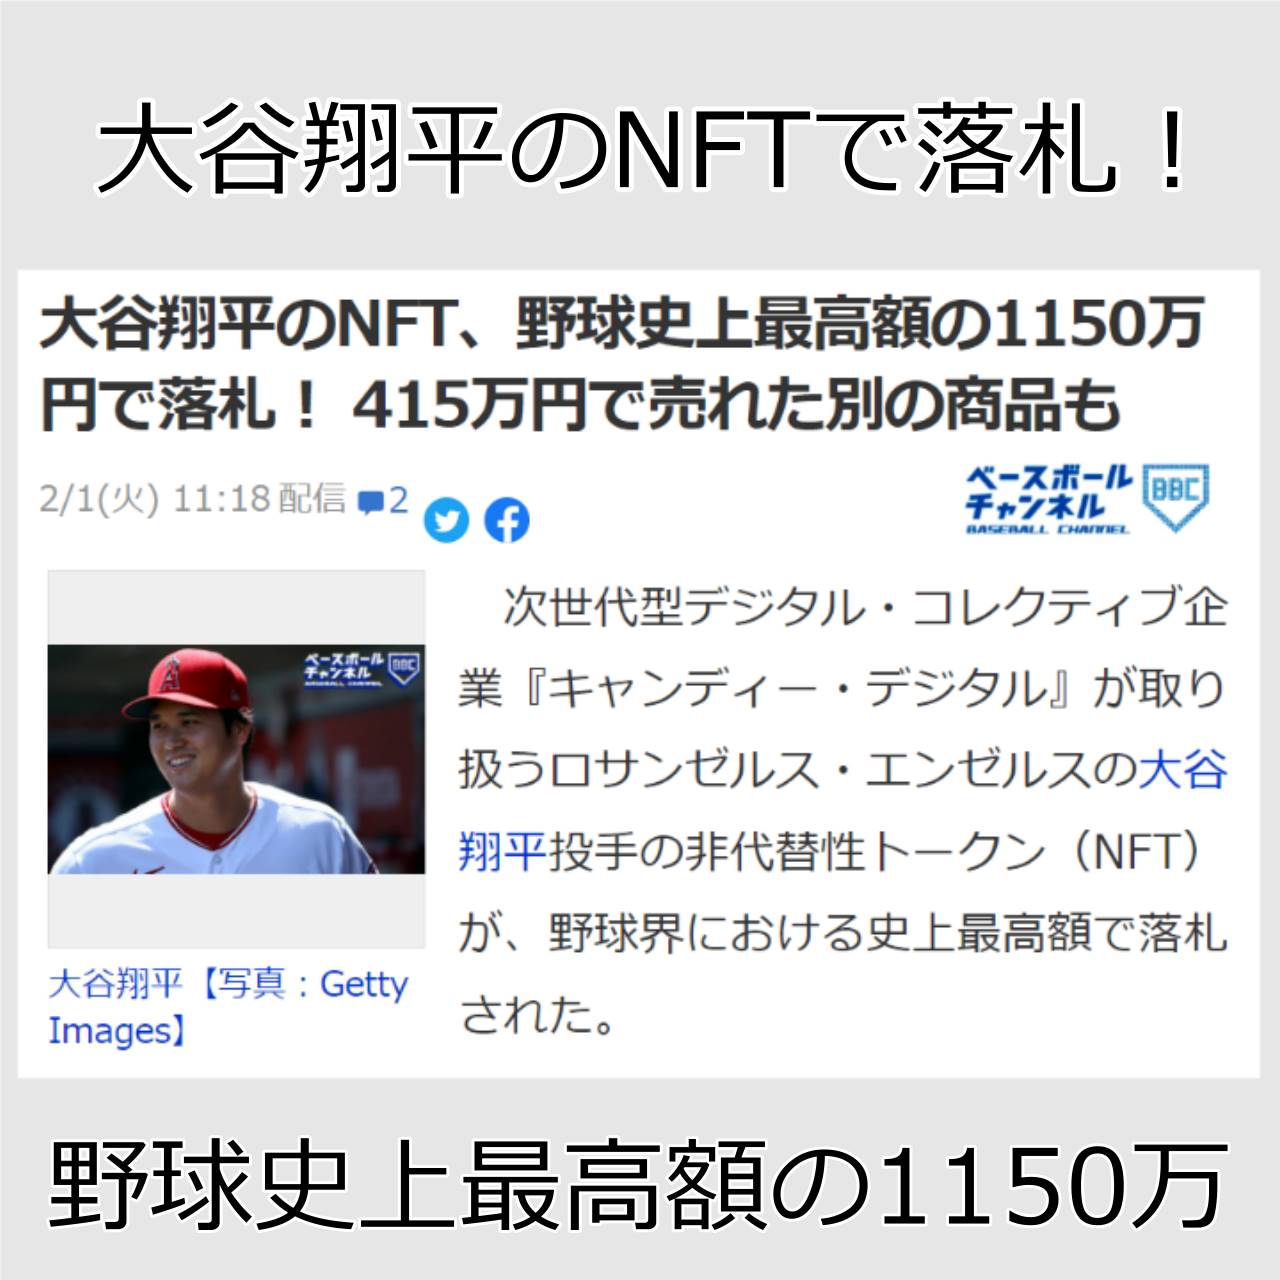 大谷翔平のNFT、野球史上最高額の1150万円で落札！